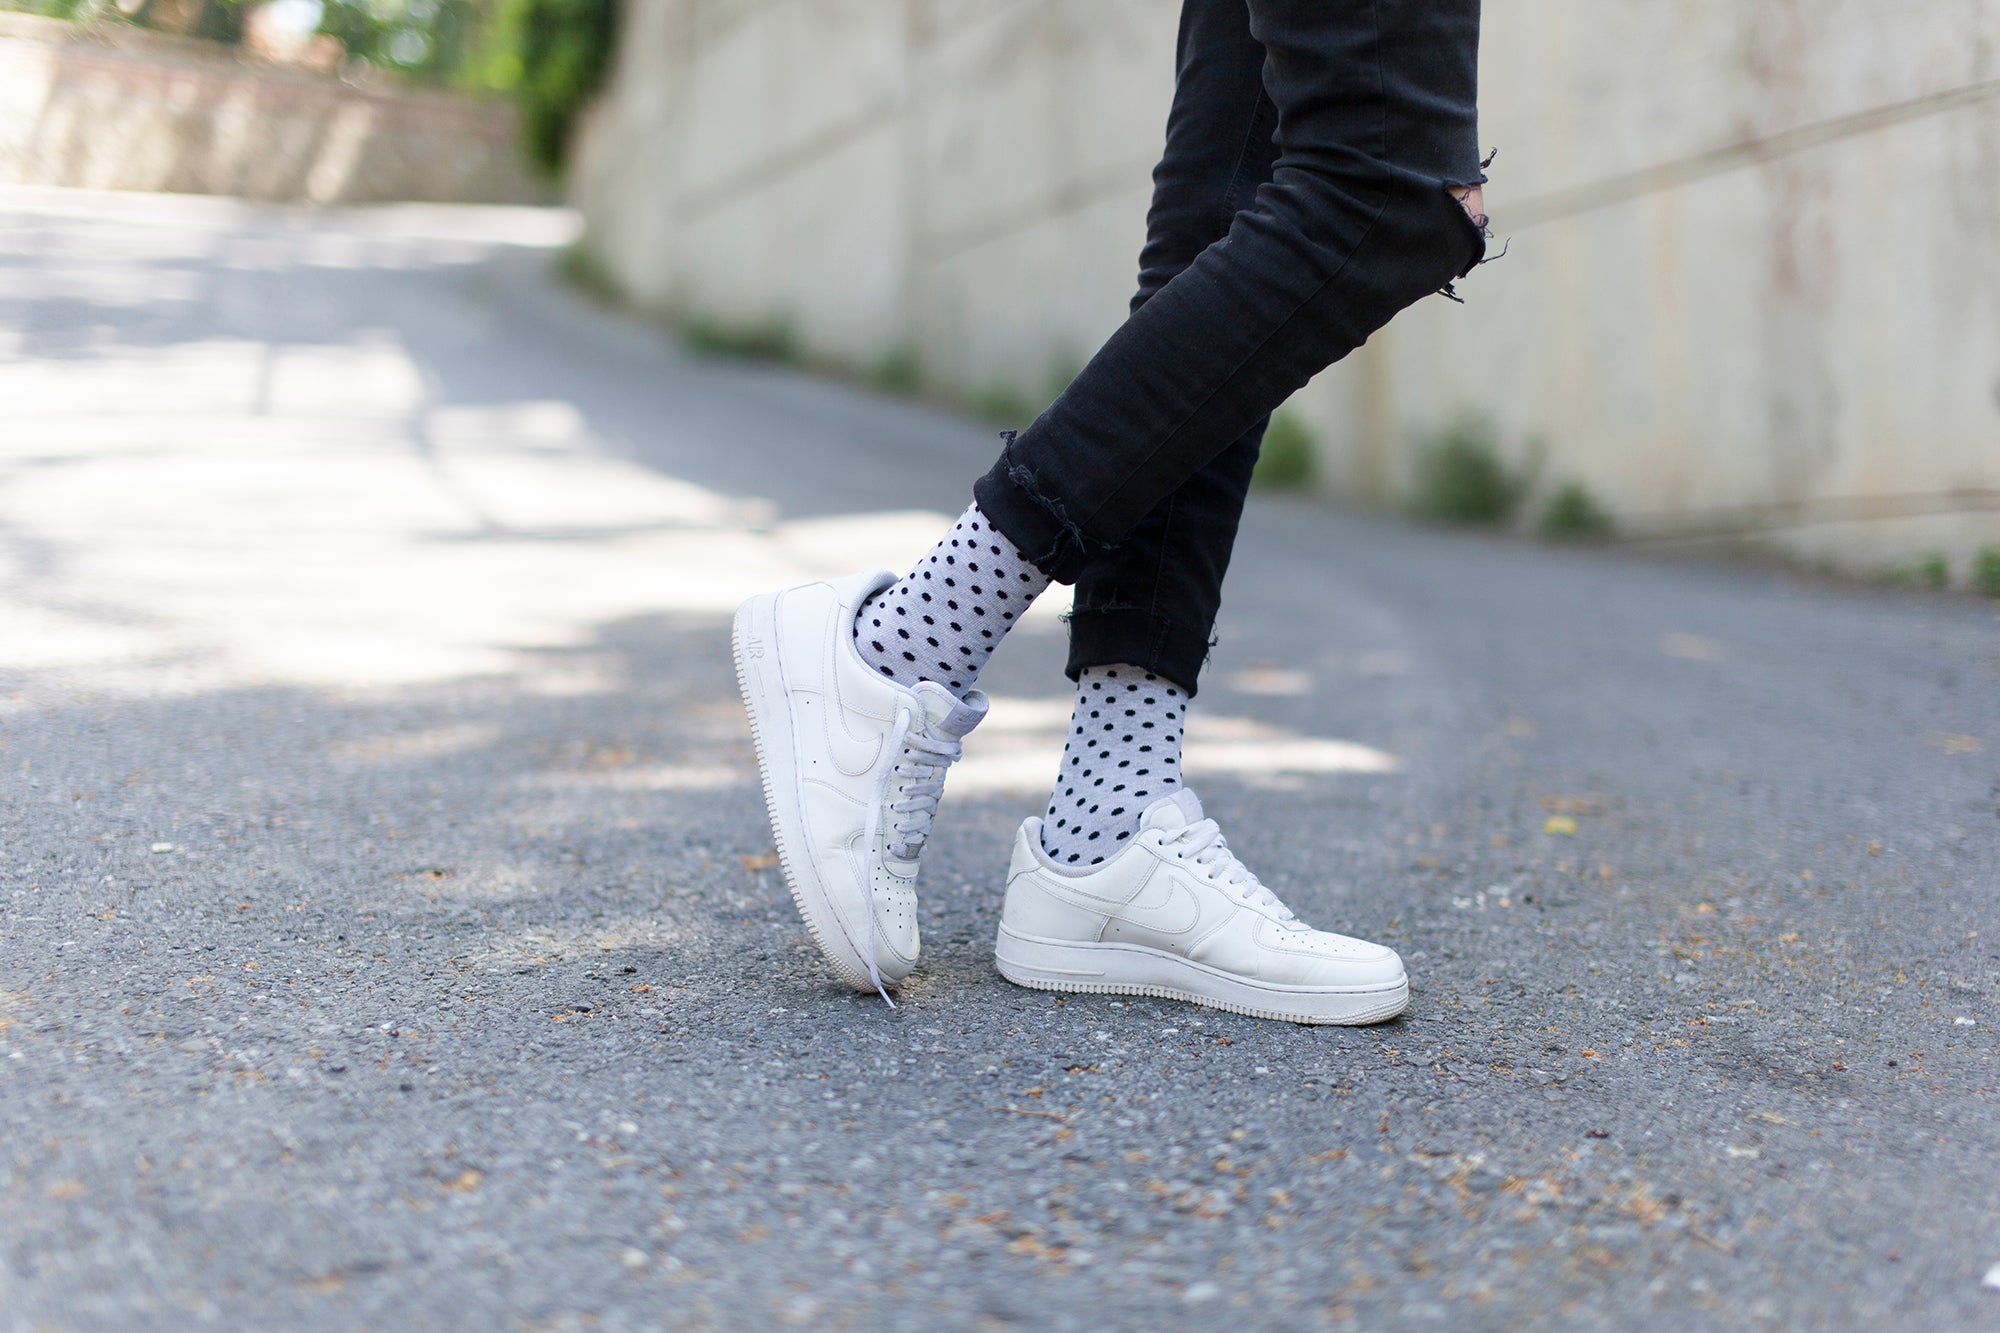 Men's Solid Grey Dot Socks